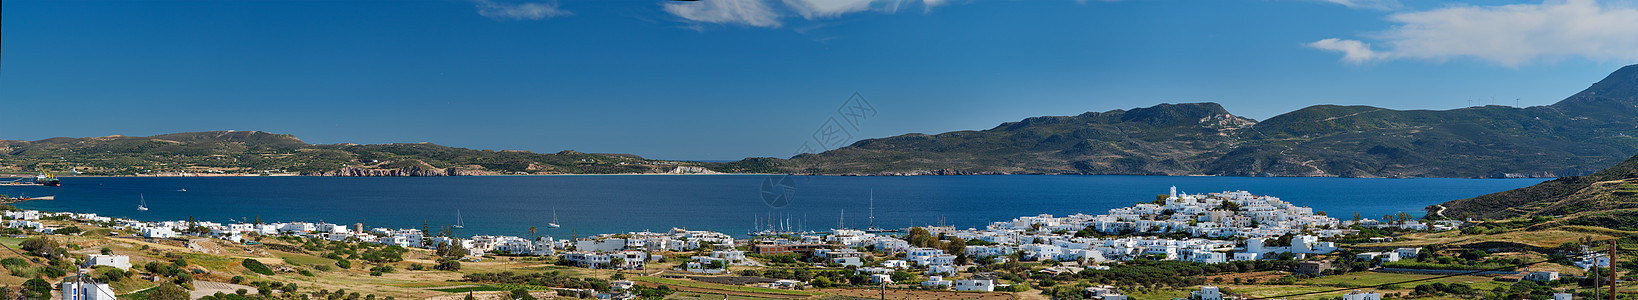 希腊希族传统教会的普拉卡村全景 希腊米洛斯岛 小城 爱琴海图片